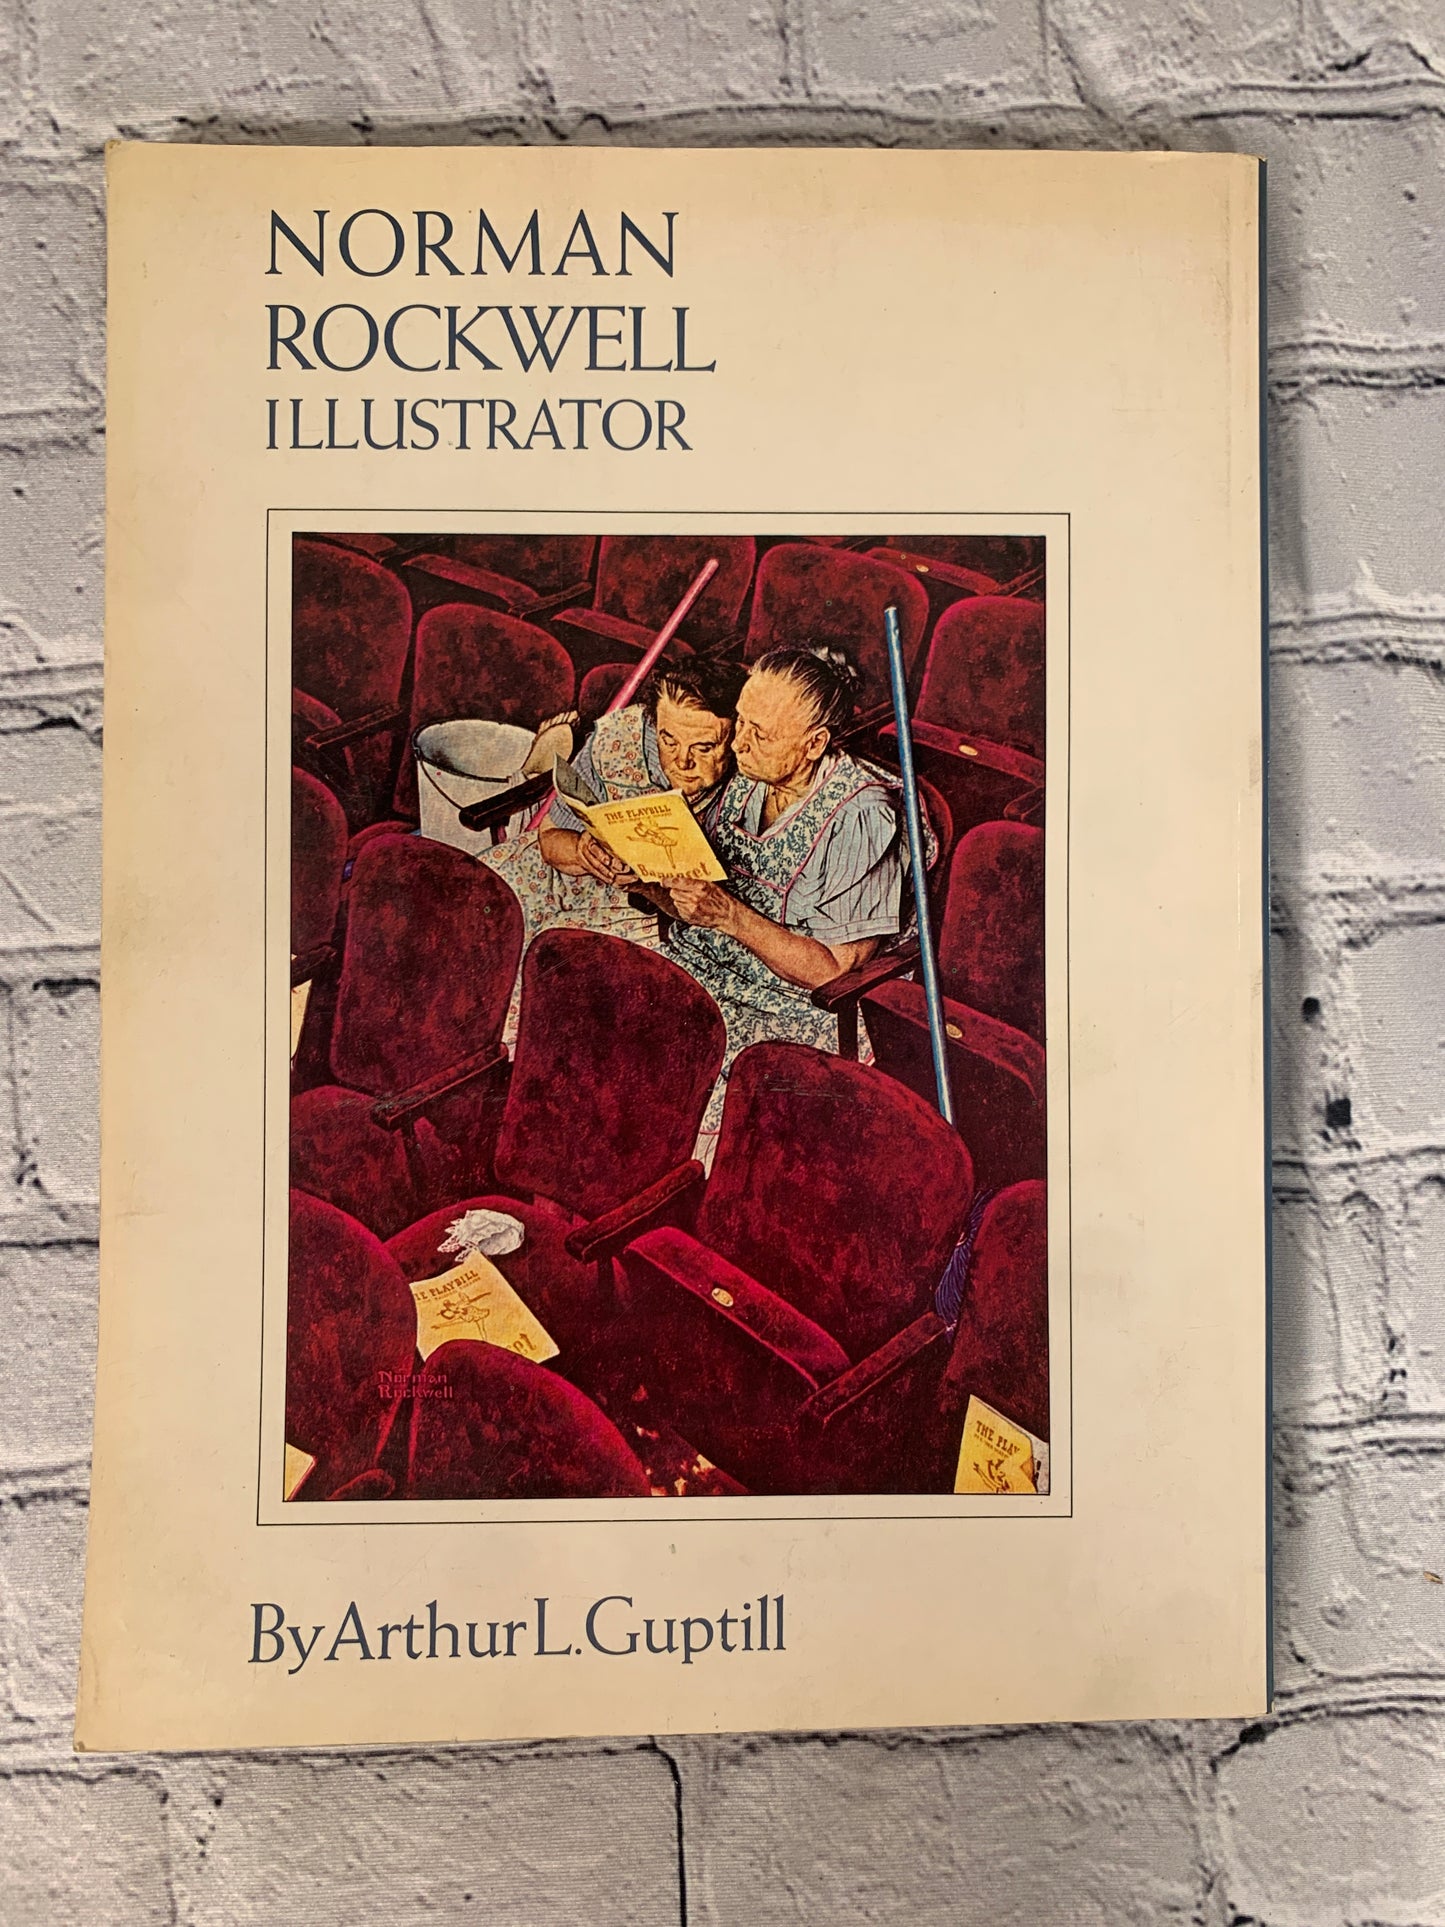 Norman Rockwell Illustrator by Arthur L. Gubtill [1971]